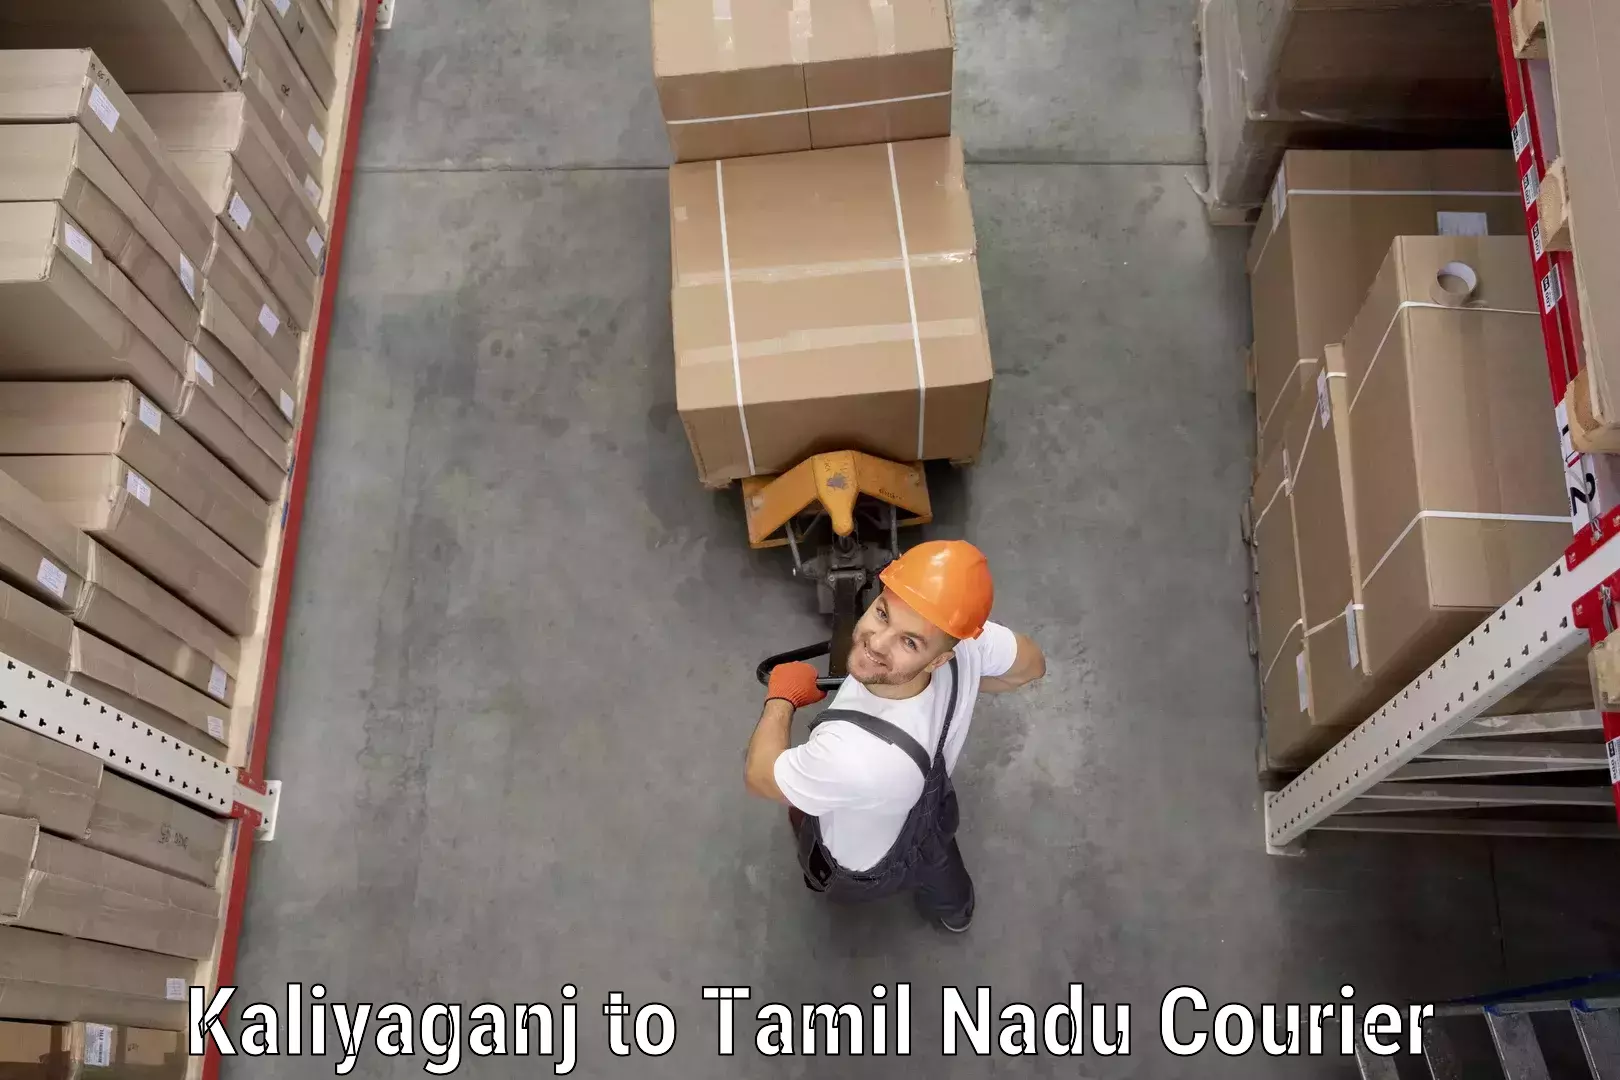 Customizable delivery plans Kaliyaganj to Tirupattur